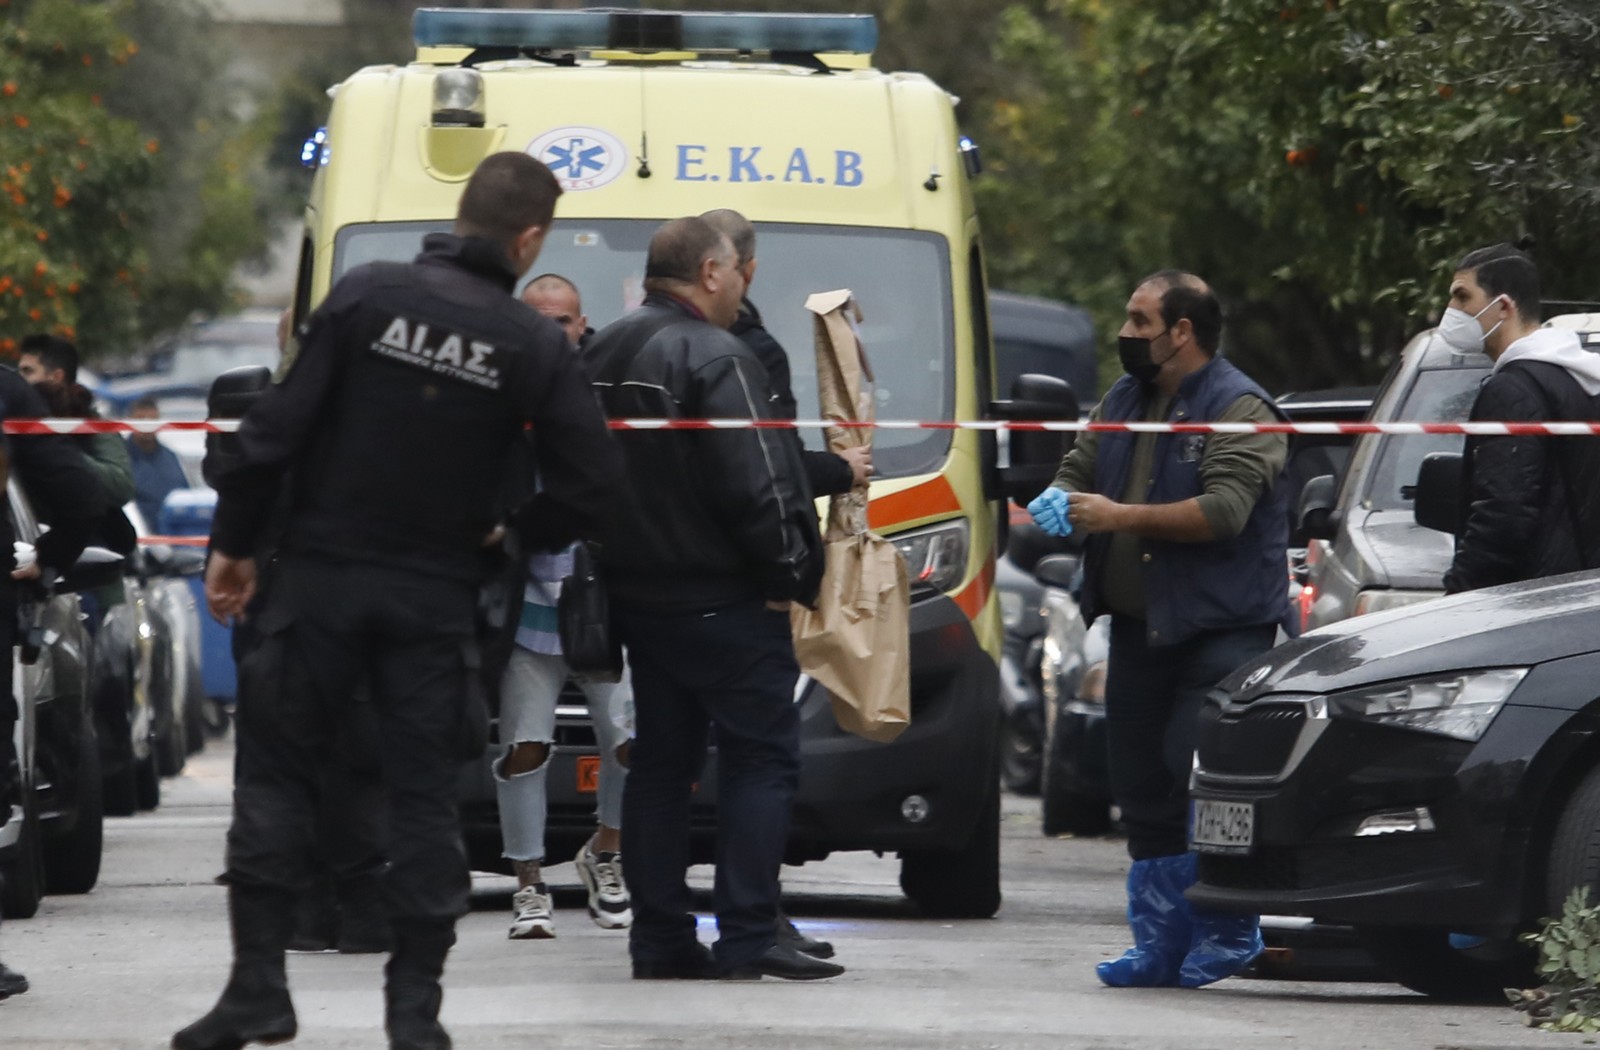 Έγκλημα στη Νίκαια: Πεθερός σκότωσε τον γαμπρό του κι αυτοκτόνησε